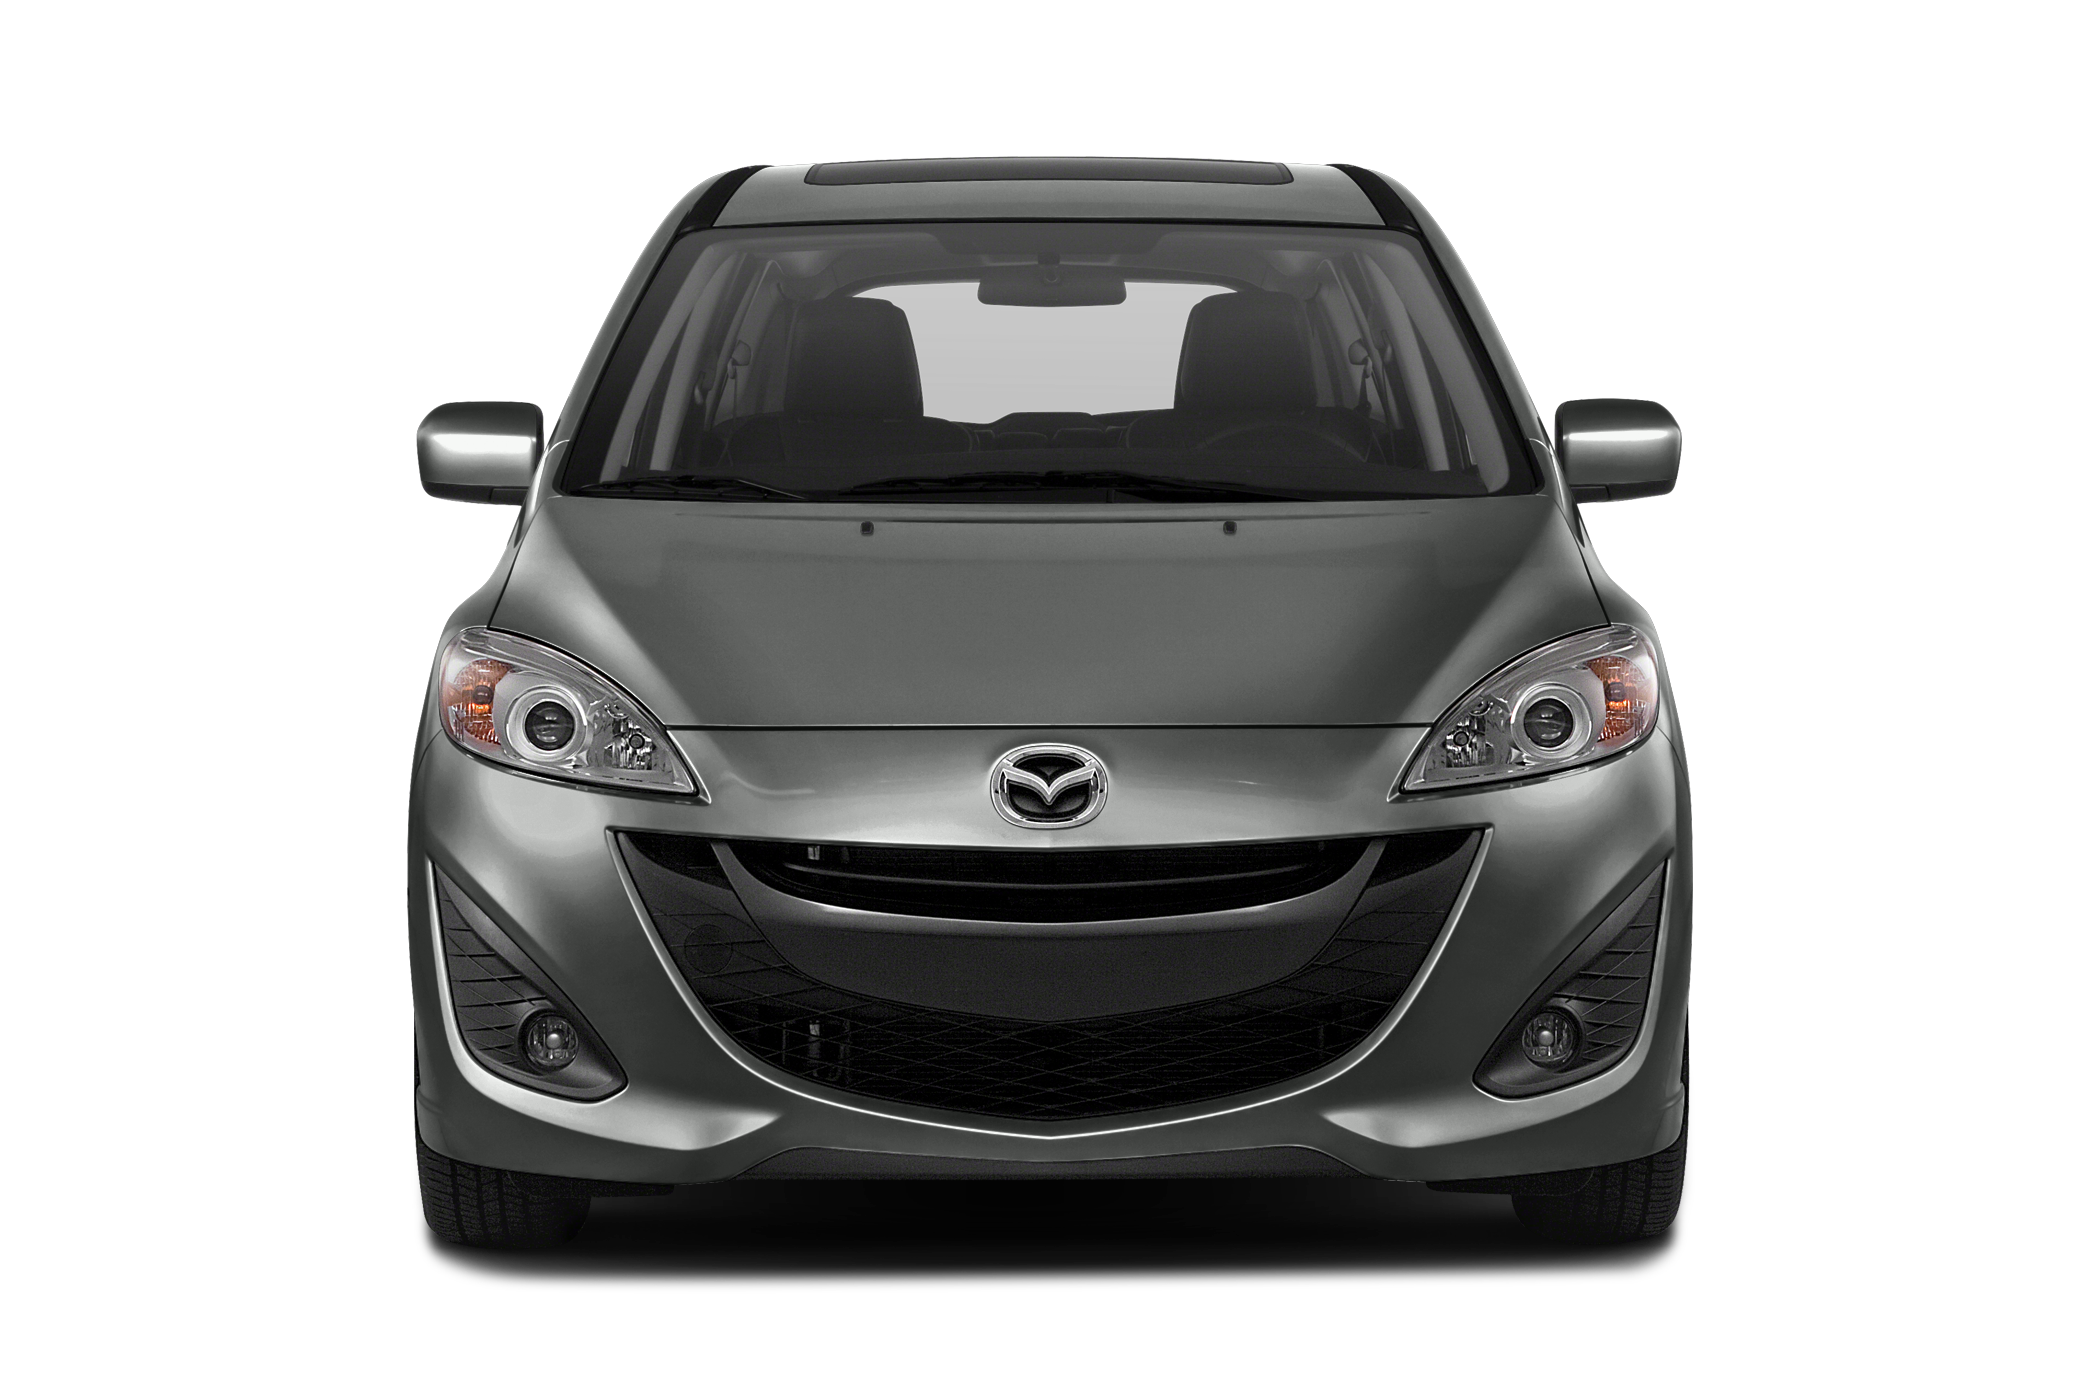 2013 Mazda Mazda5